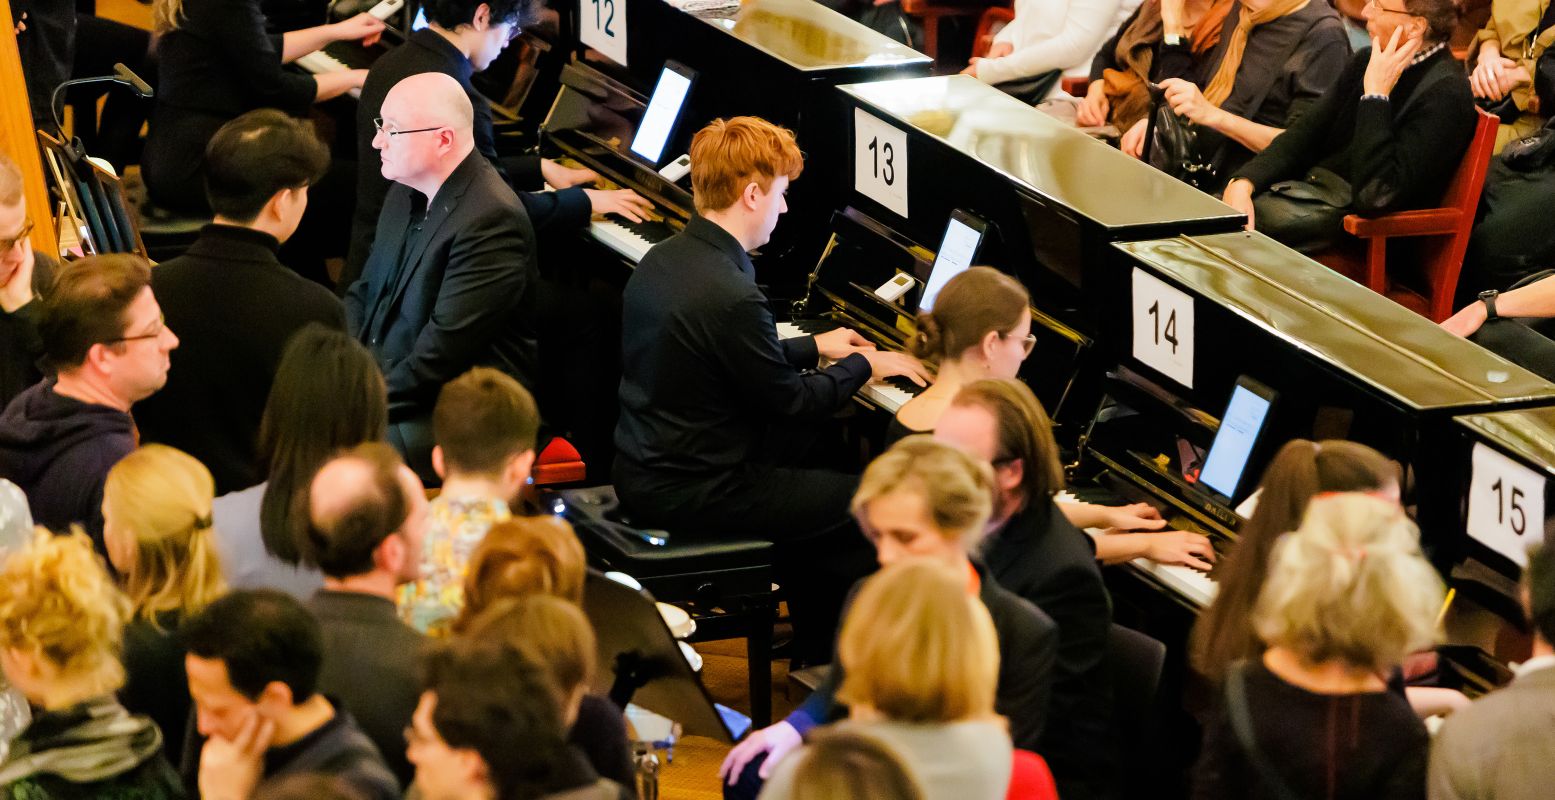 '11.000 Saiten' van Georg Friedrich Haas, met vijftig piano's die spelen in een grote cirkel. Foto: Markus Sepperer